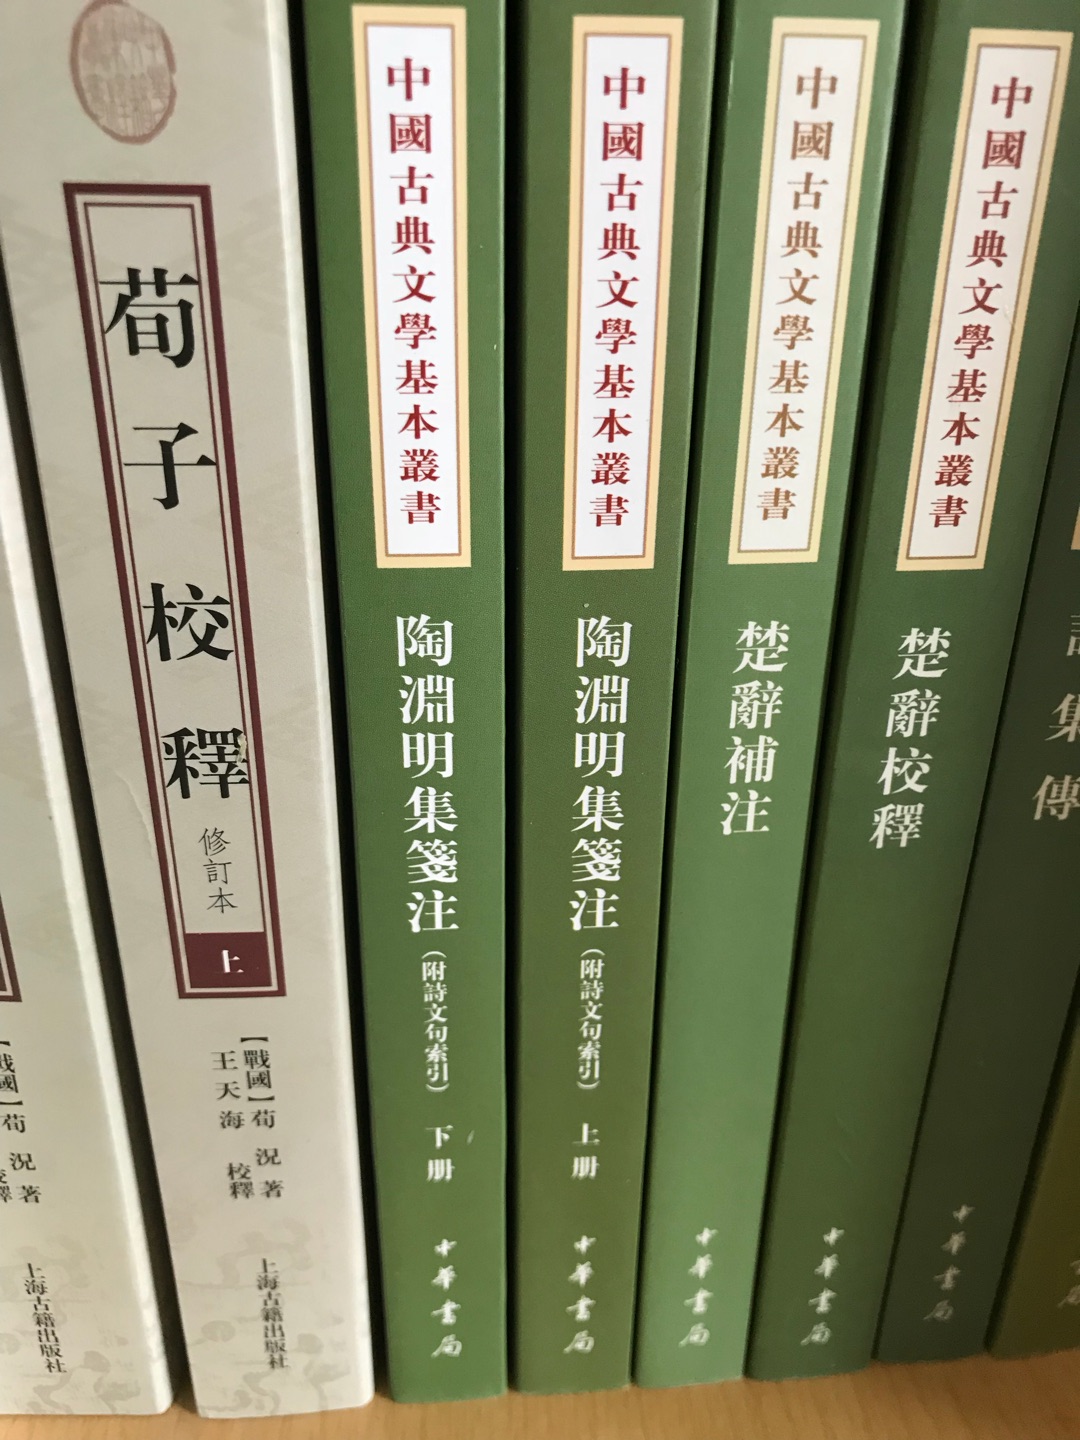 世界讀書日，京東搞活動的力度非常大，心儀已久的書籍這次又買了許多，期待下一次喔。